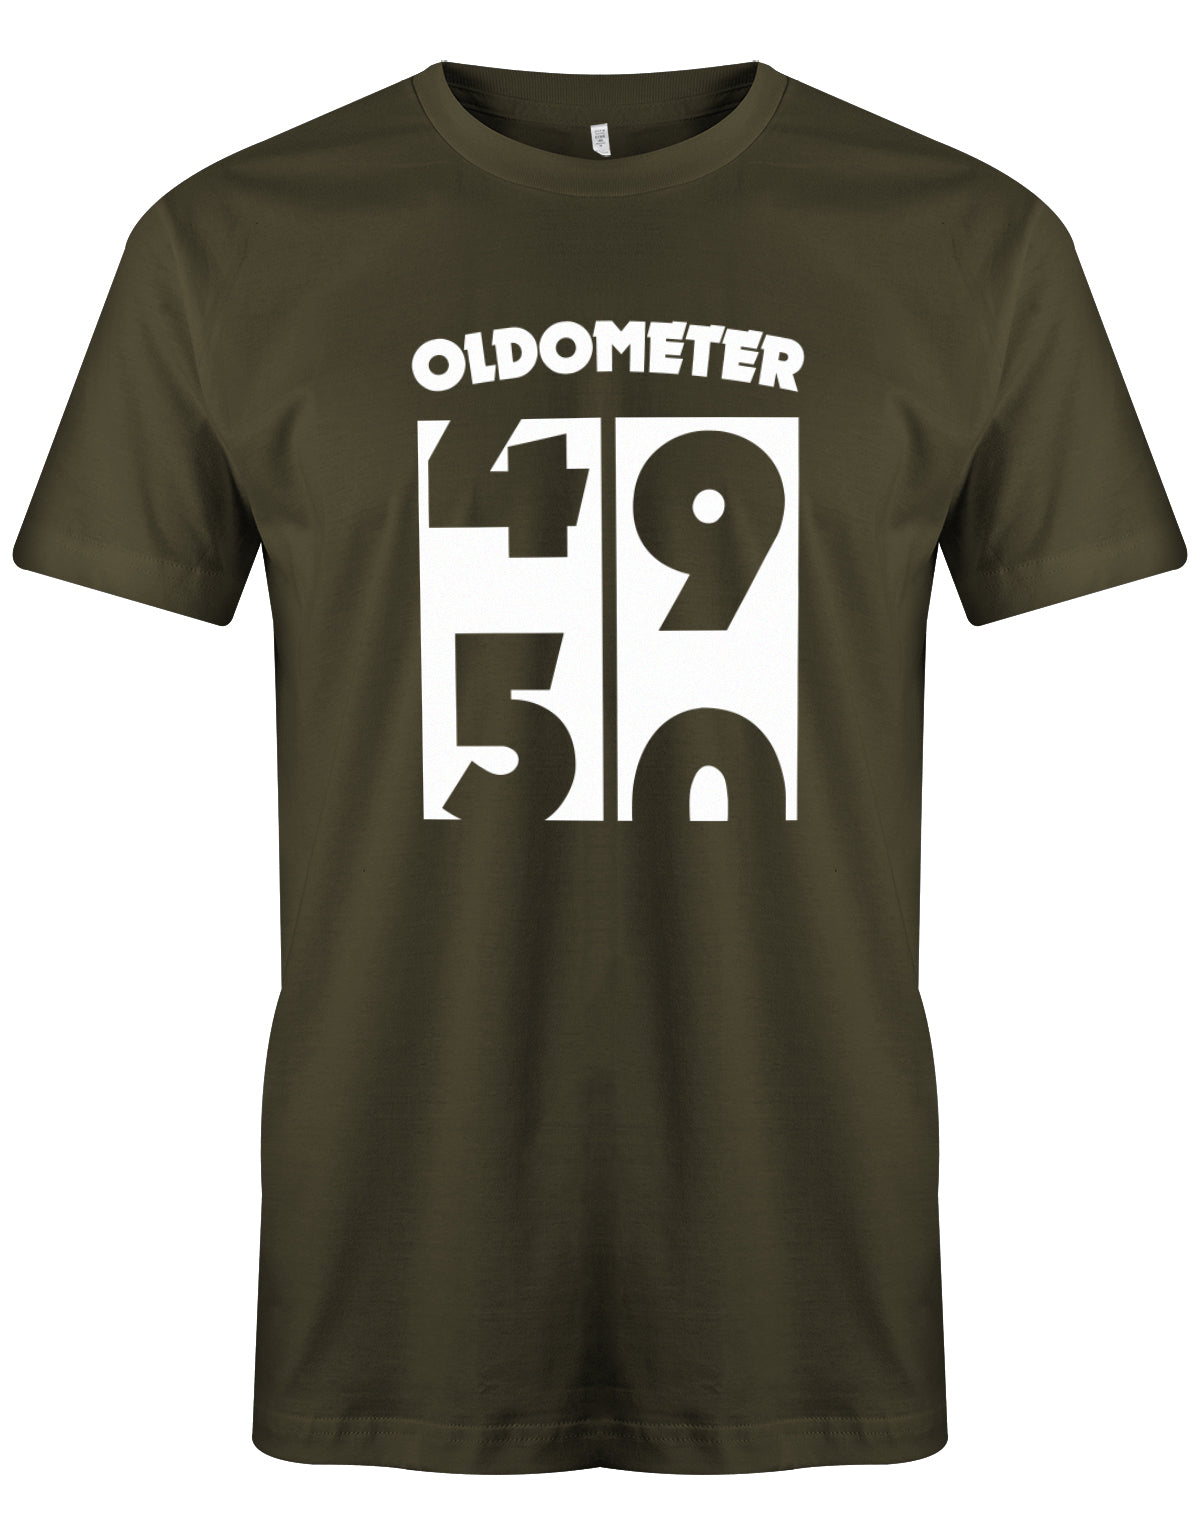 Lustiges T-Shirt zum 50 Geburtstag für den Mann Bedruckt mit Oldometer von 49 wechsel zu 50 Jahren. Army